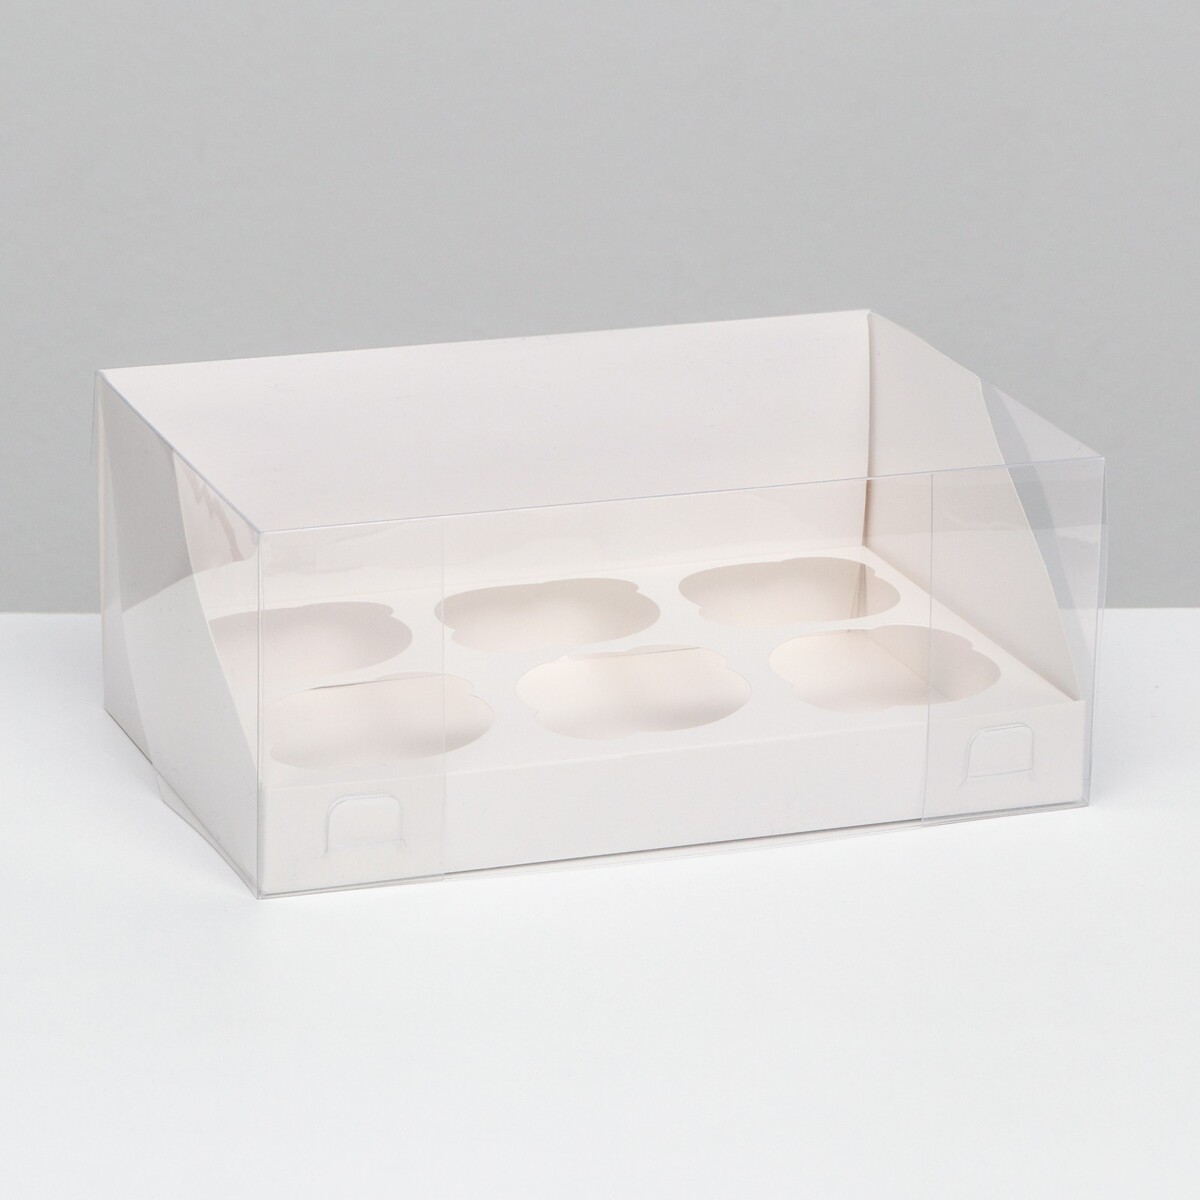 Кондитерская складная коробка для 6 капкейков, белая 23,5 х 16 х 14 см кондитерская складная коробка для 6 капкейков белая 23 5 х 16 х 14 см